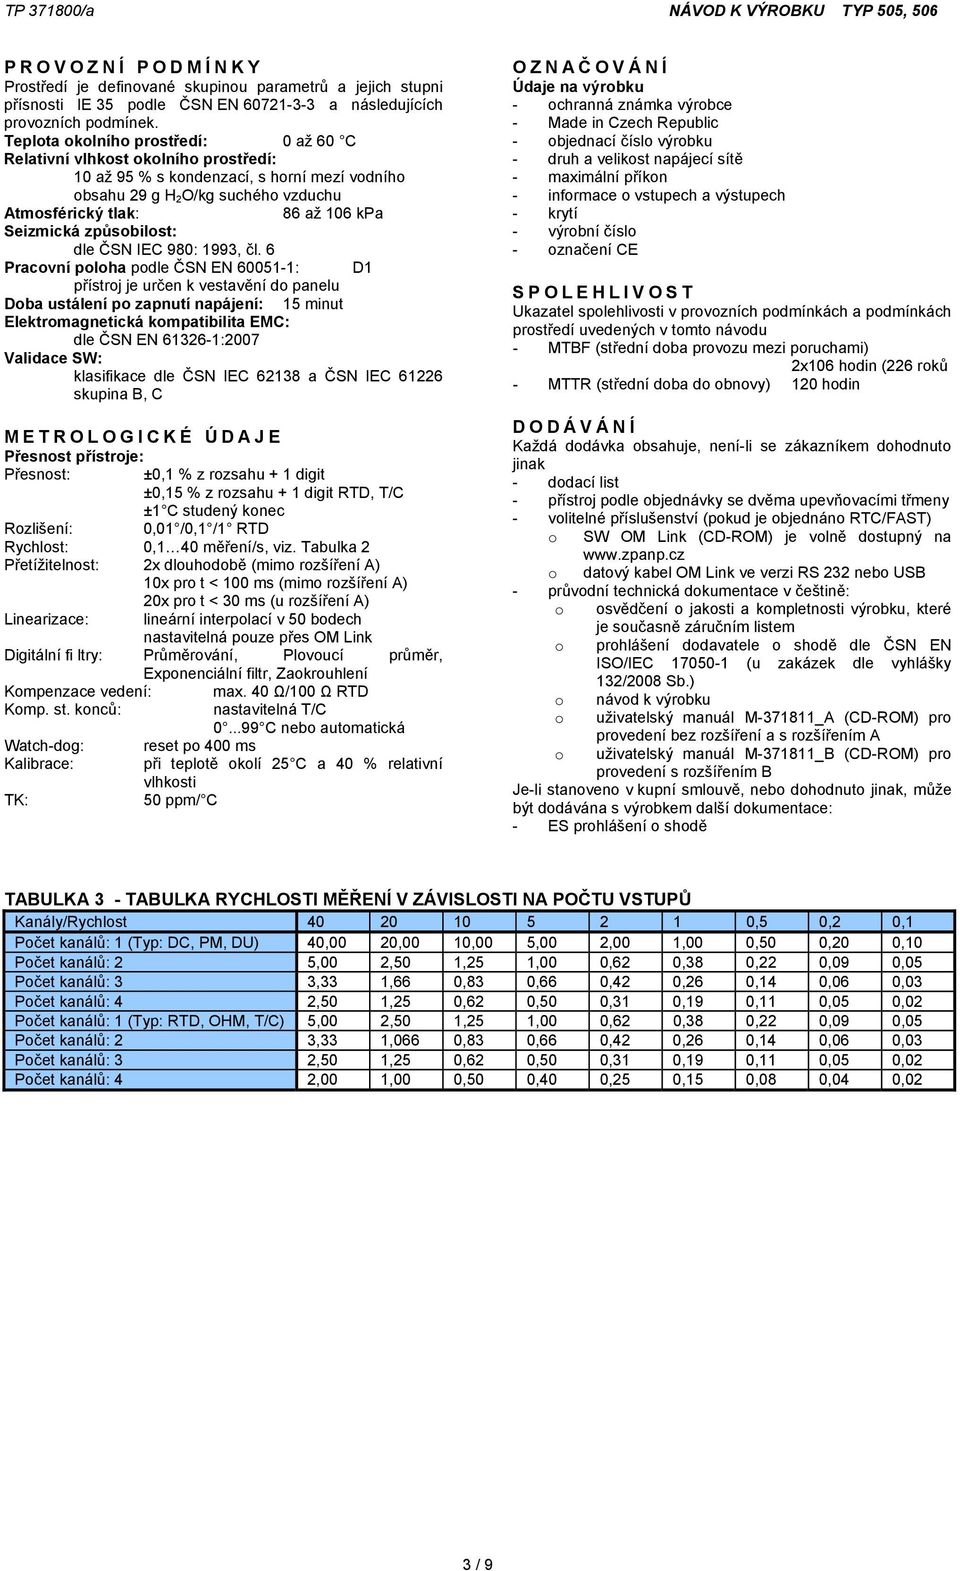 Seizmická způsobilost: dle ČSN IEC 980: 1993, čl.